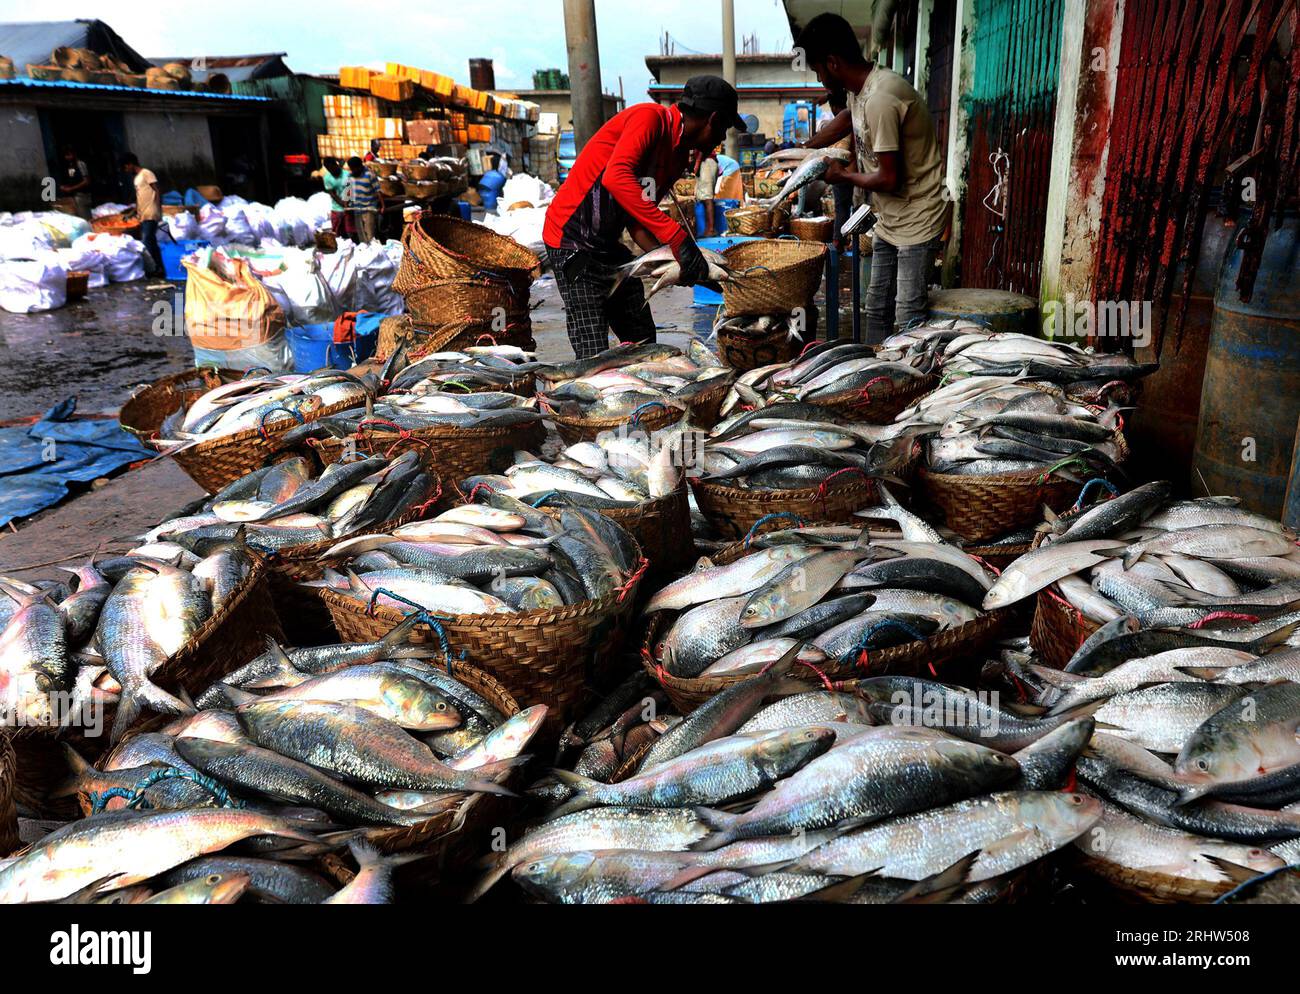 Chittagong, Fischerei Ghat, Bangladesch. Aug. 2023. August 2023. Chittagong, Bangladesch: Der Großhandelsmarkt für die Fischerei in Chittagong, Bangladesch, hat sich während der Hilsa-Fischsaison angesammelt. Der nationale Fisch von Bangladesch, hilsa, wird an Einzelhändler verkauft, nachdem er aus dem Meer gewonnen wurde. Die Fischer freuen sich, mehr Hilsa im Meer zu finden. (Bild: © Mohammed Shajahan/ZUMA Press Wire) NUR REDAKTIONELLE VERWENDUNG! Nicht für kommerzielle ZWECKE! Stockfoto